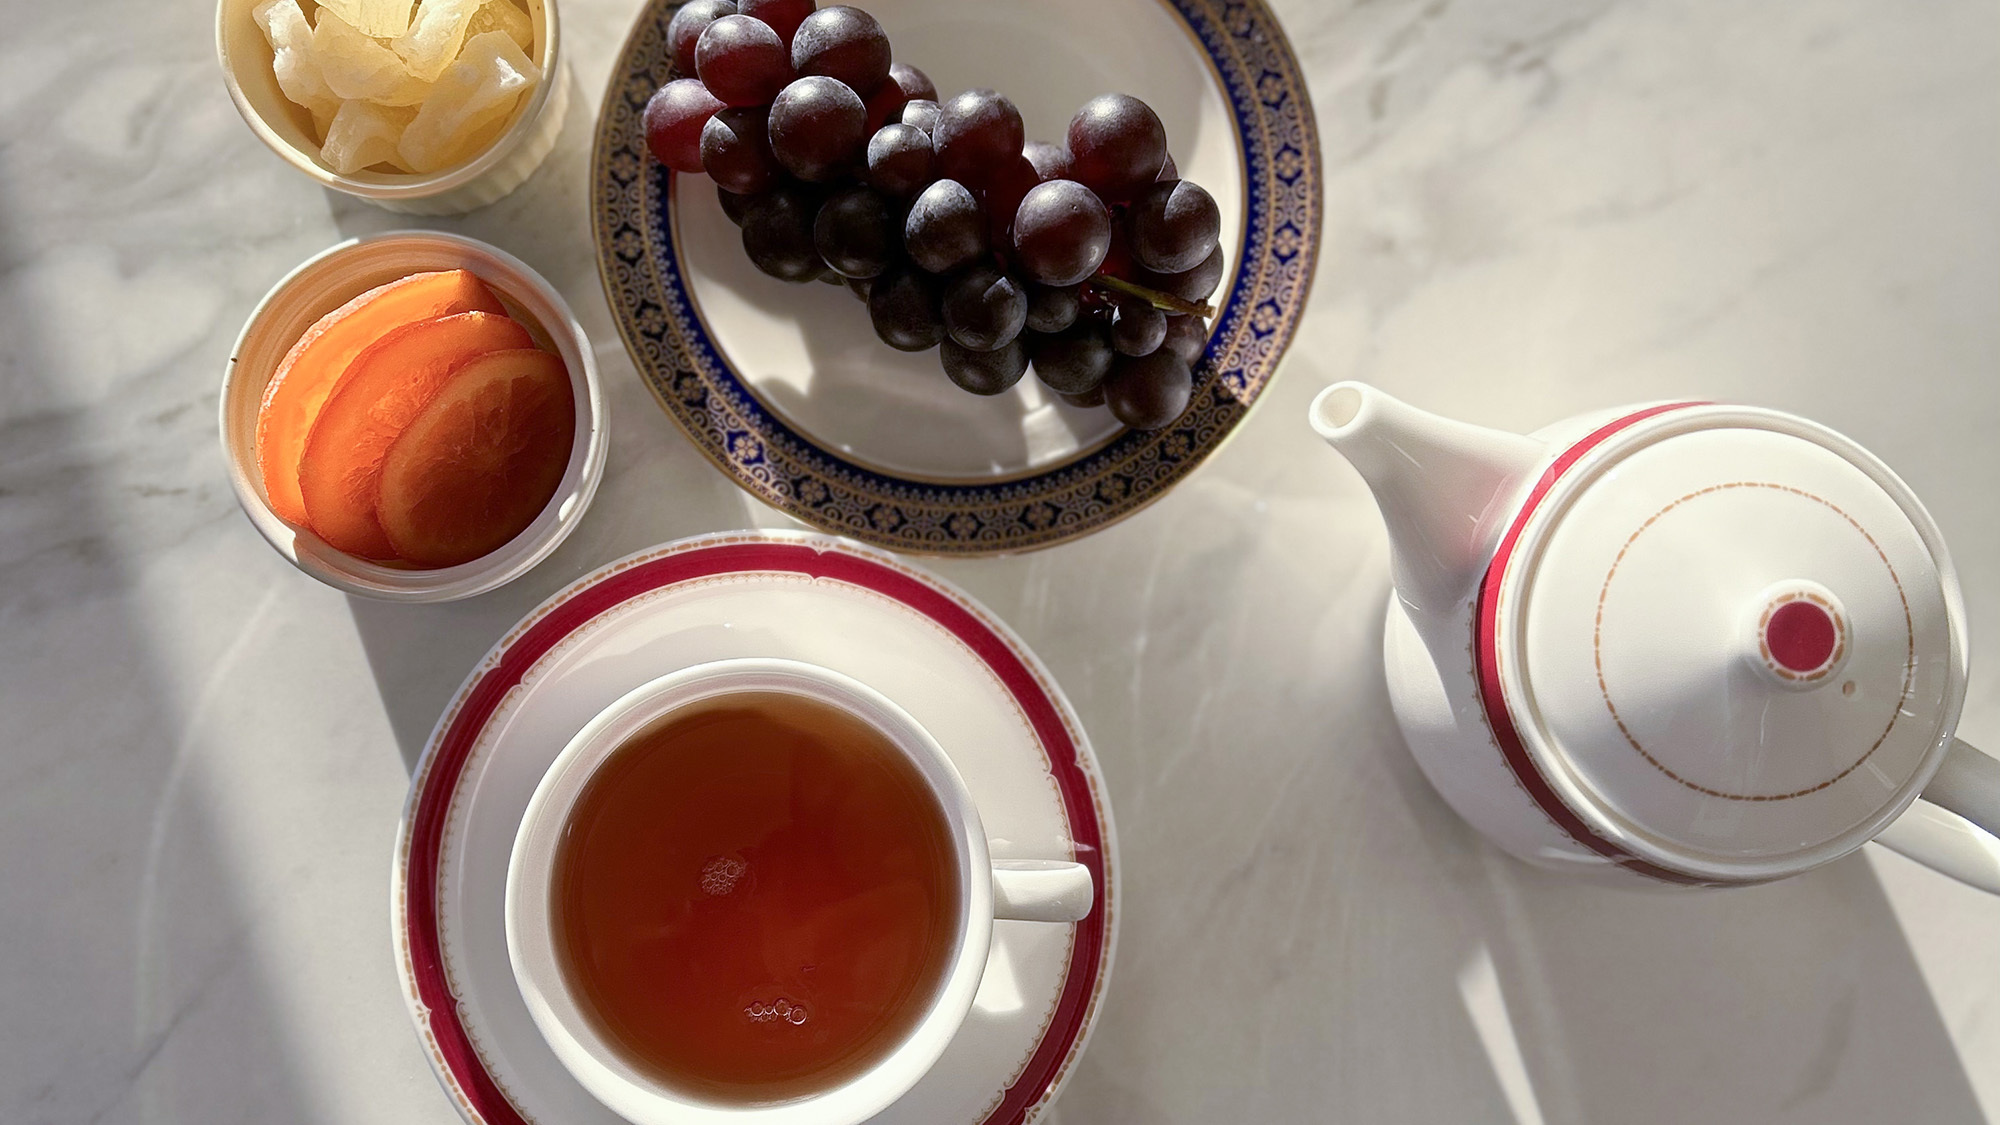 ・【食器】紅茶とフレッシュなフルーツの優雅なティータイムはいかがでしょうか？